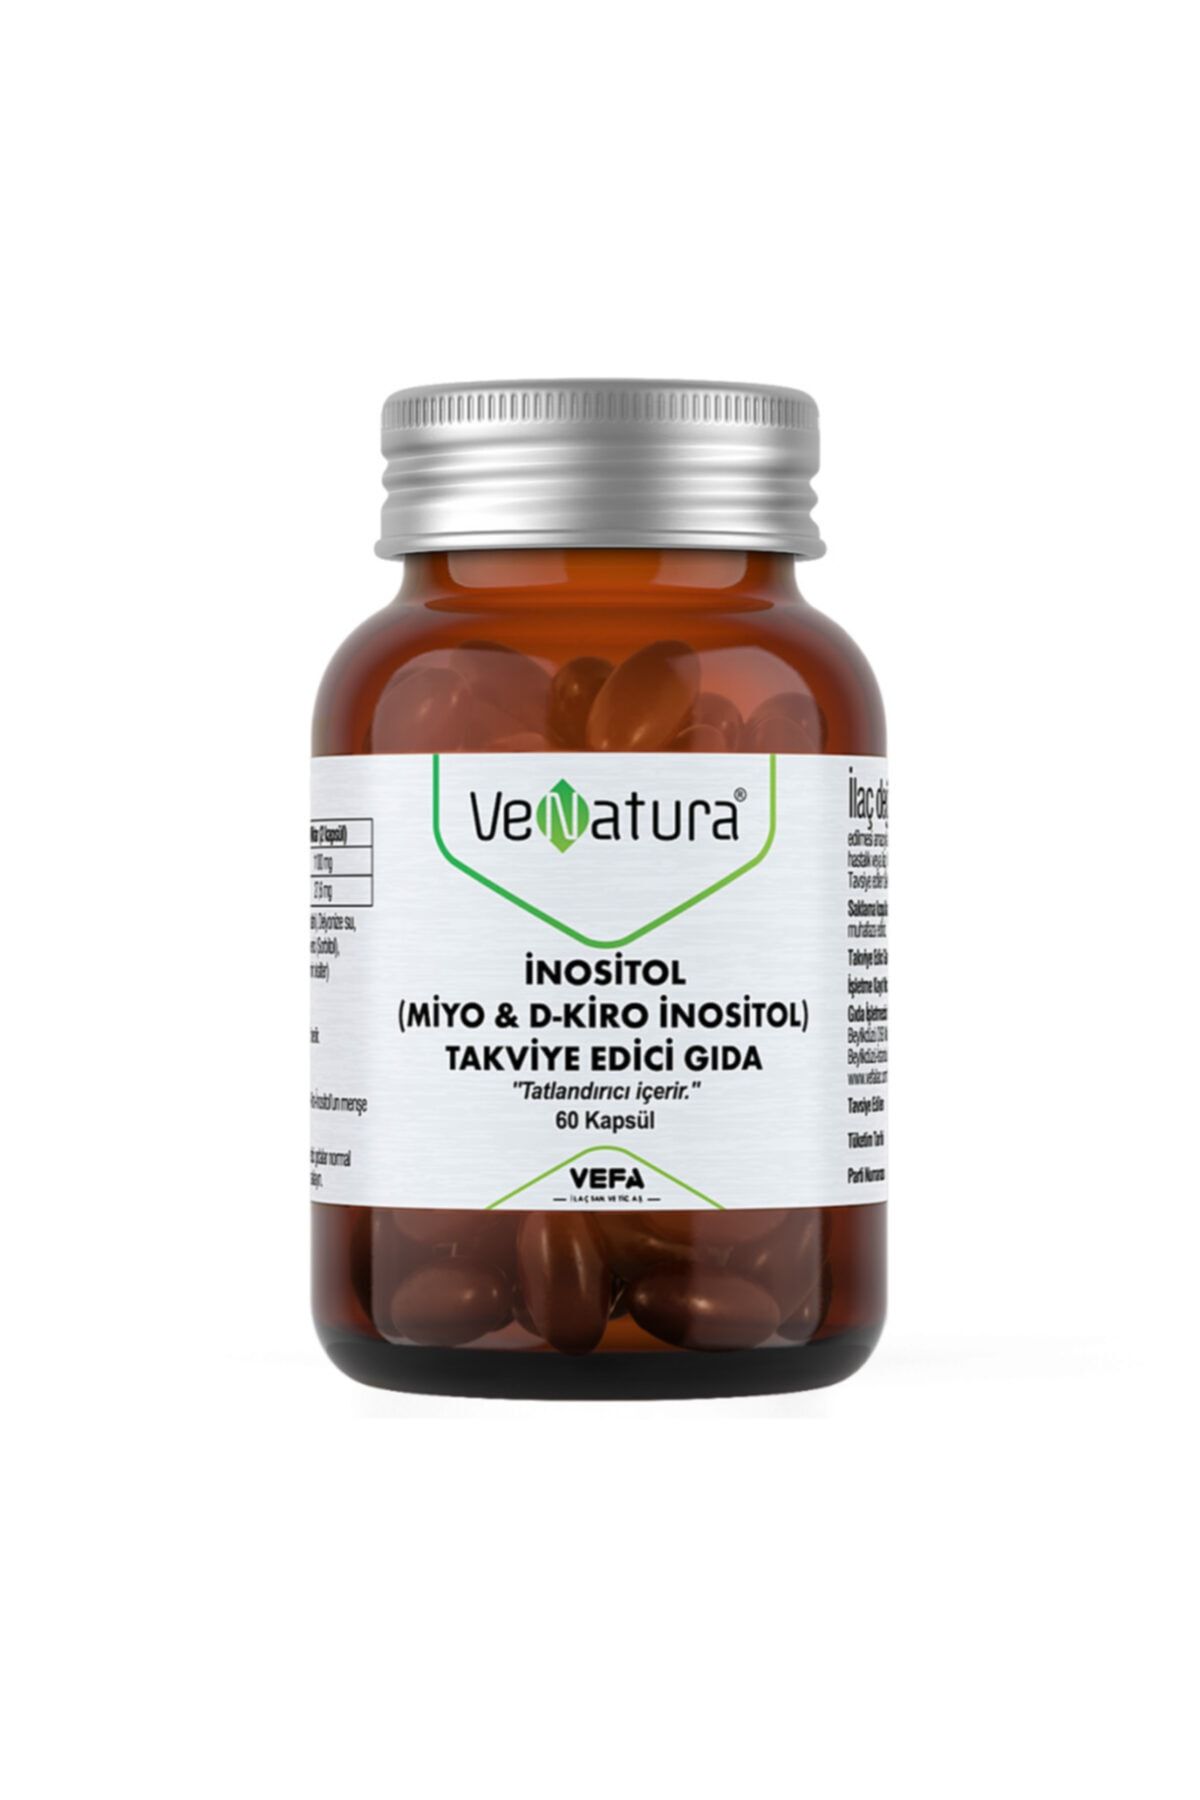 Venatura Inositol (miyo & D-kiro Inositol) 60 Kapsül